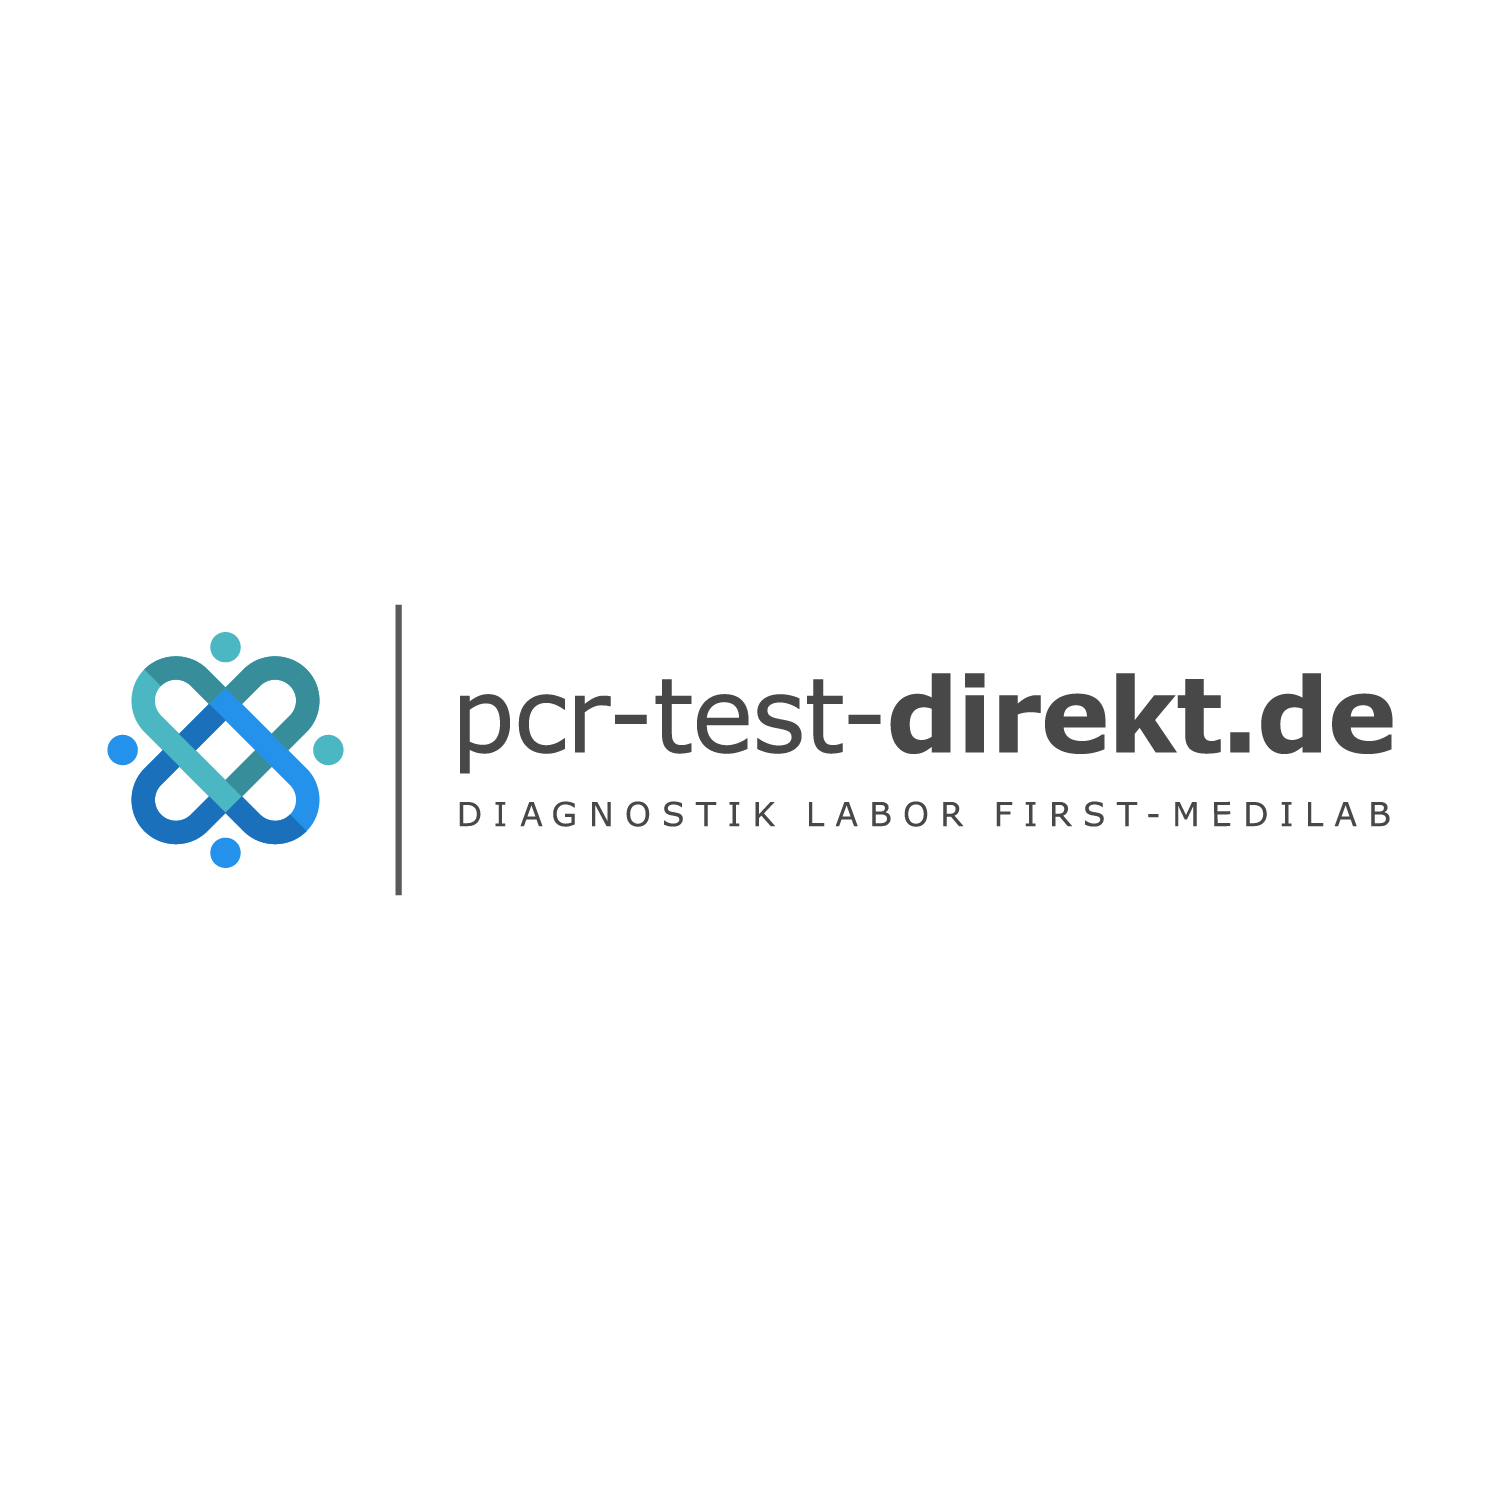 PCR-Testzentrum Freiburg im Breisgau Strandbad Freiburg| pcr-test-direkt.de